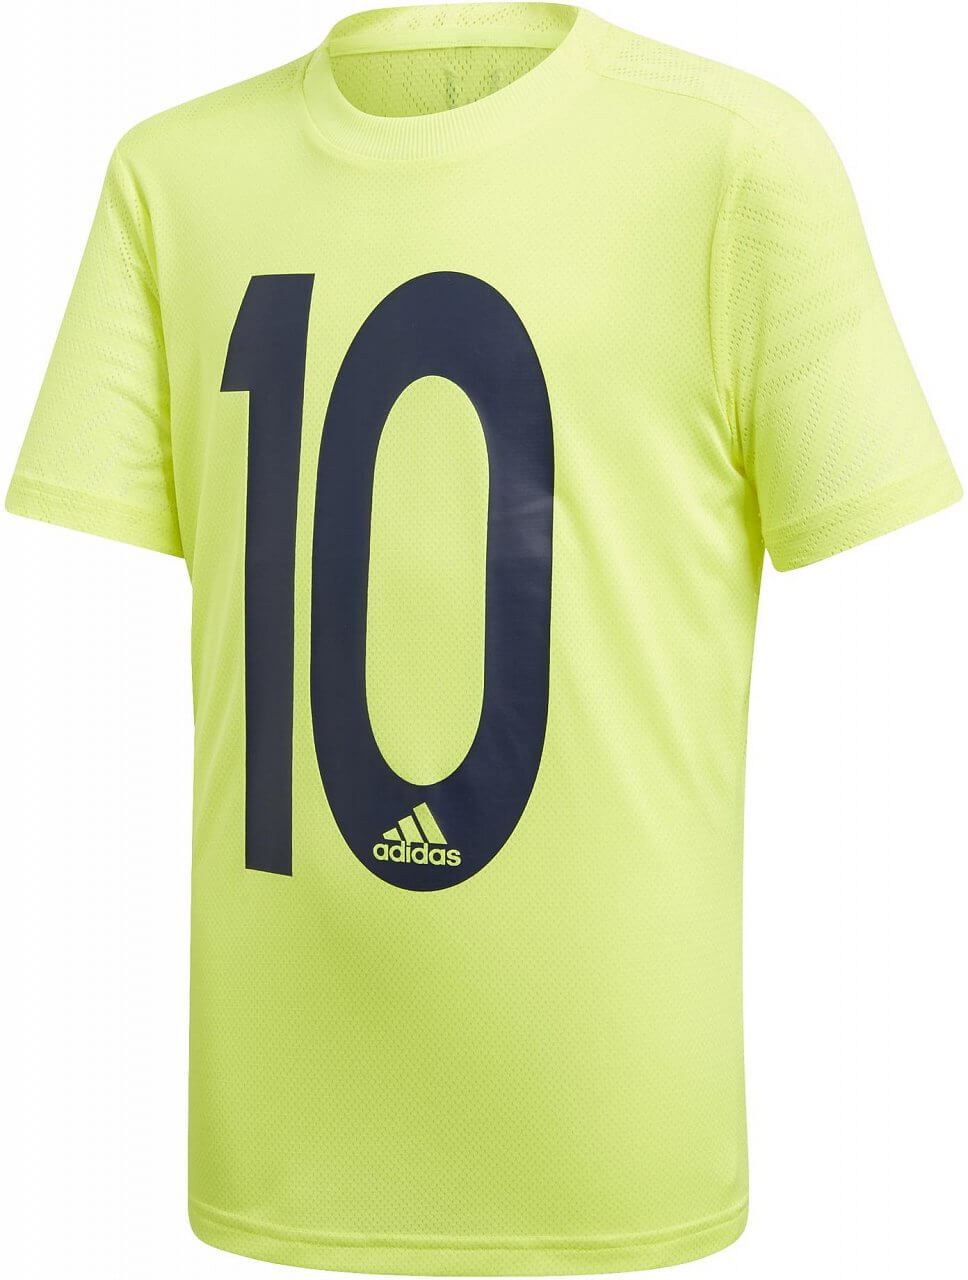 Chlapecký sportovní dres adidas Youth Boys Messi Icon Jersey